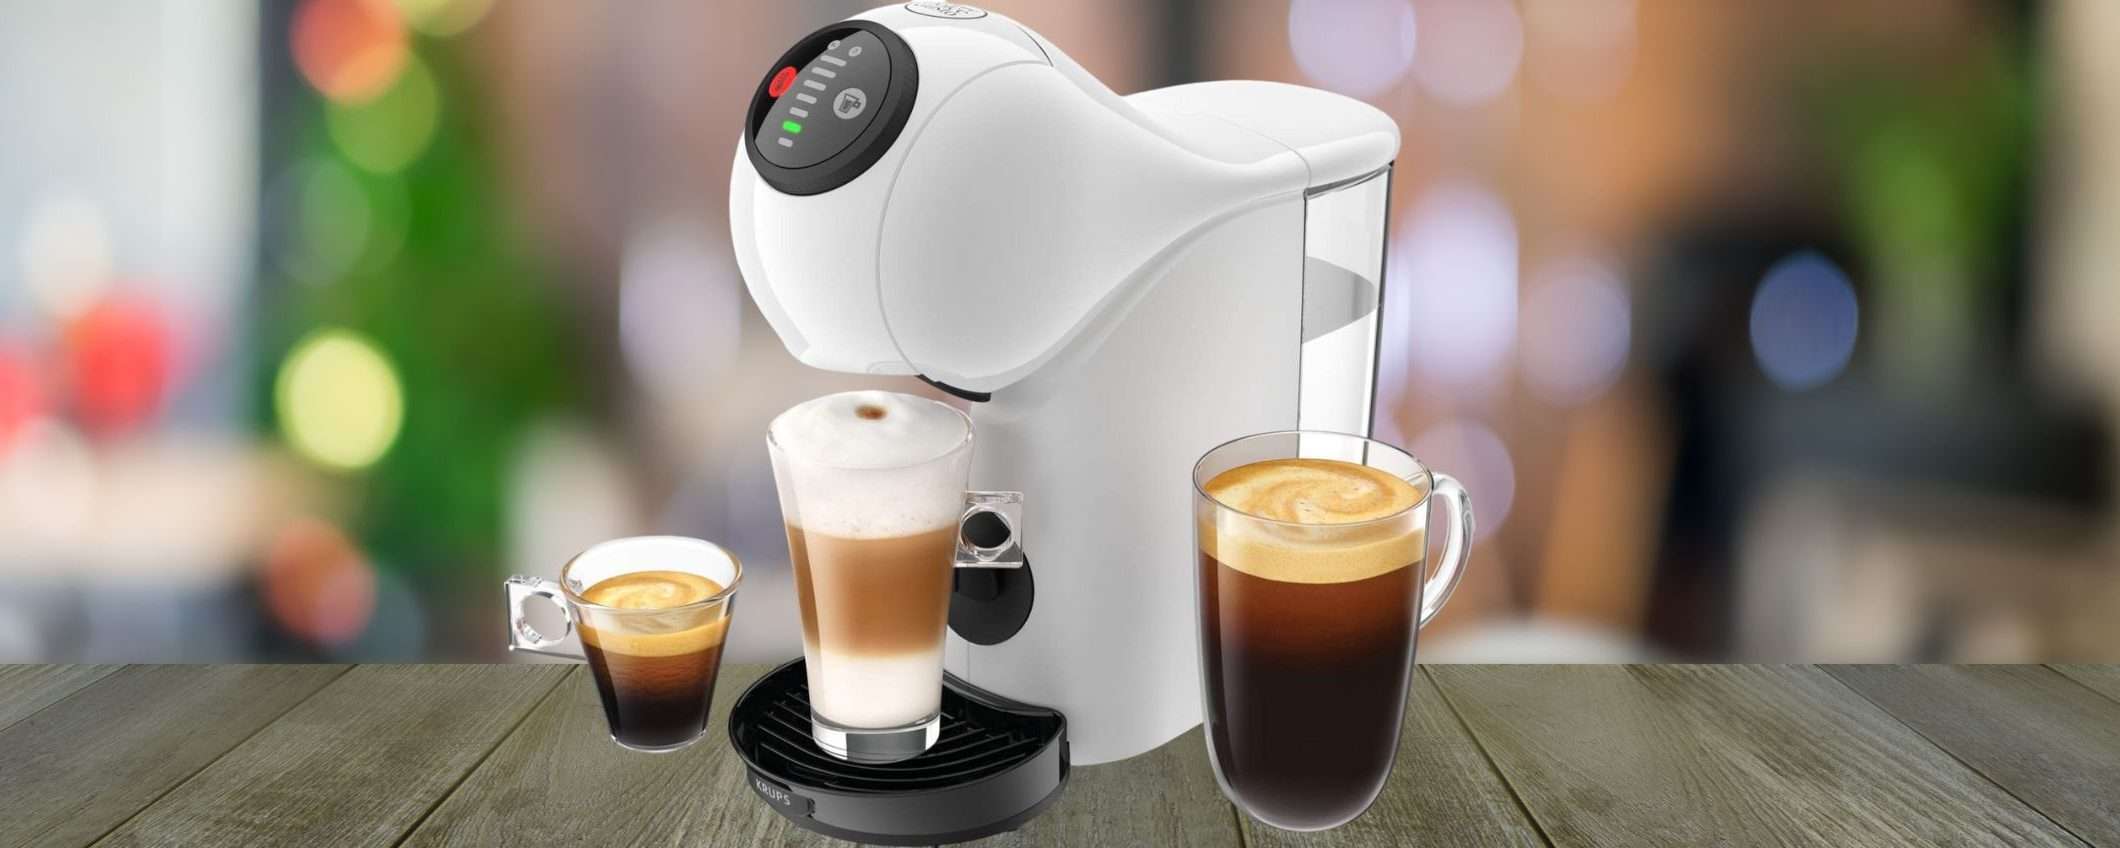 Nescafé Dolce Gusto Genio a 69€ con 30€ di caffè GRATIS: promo SHOCK